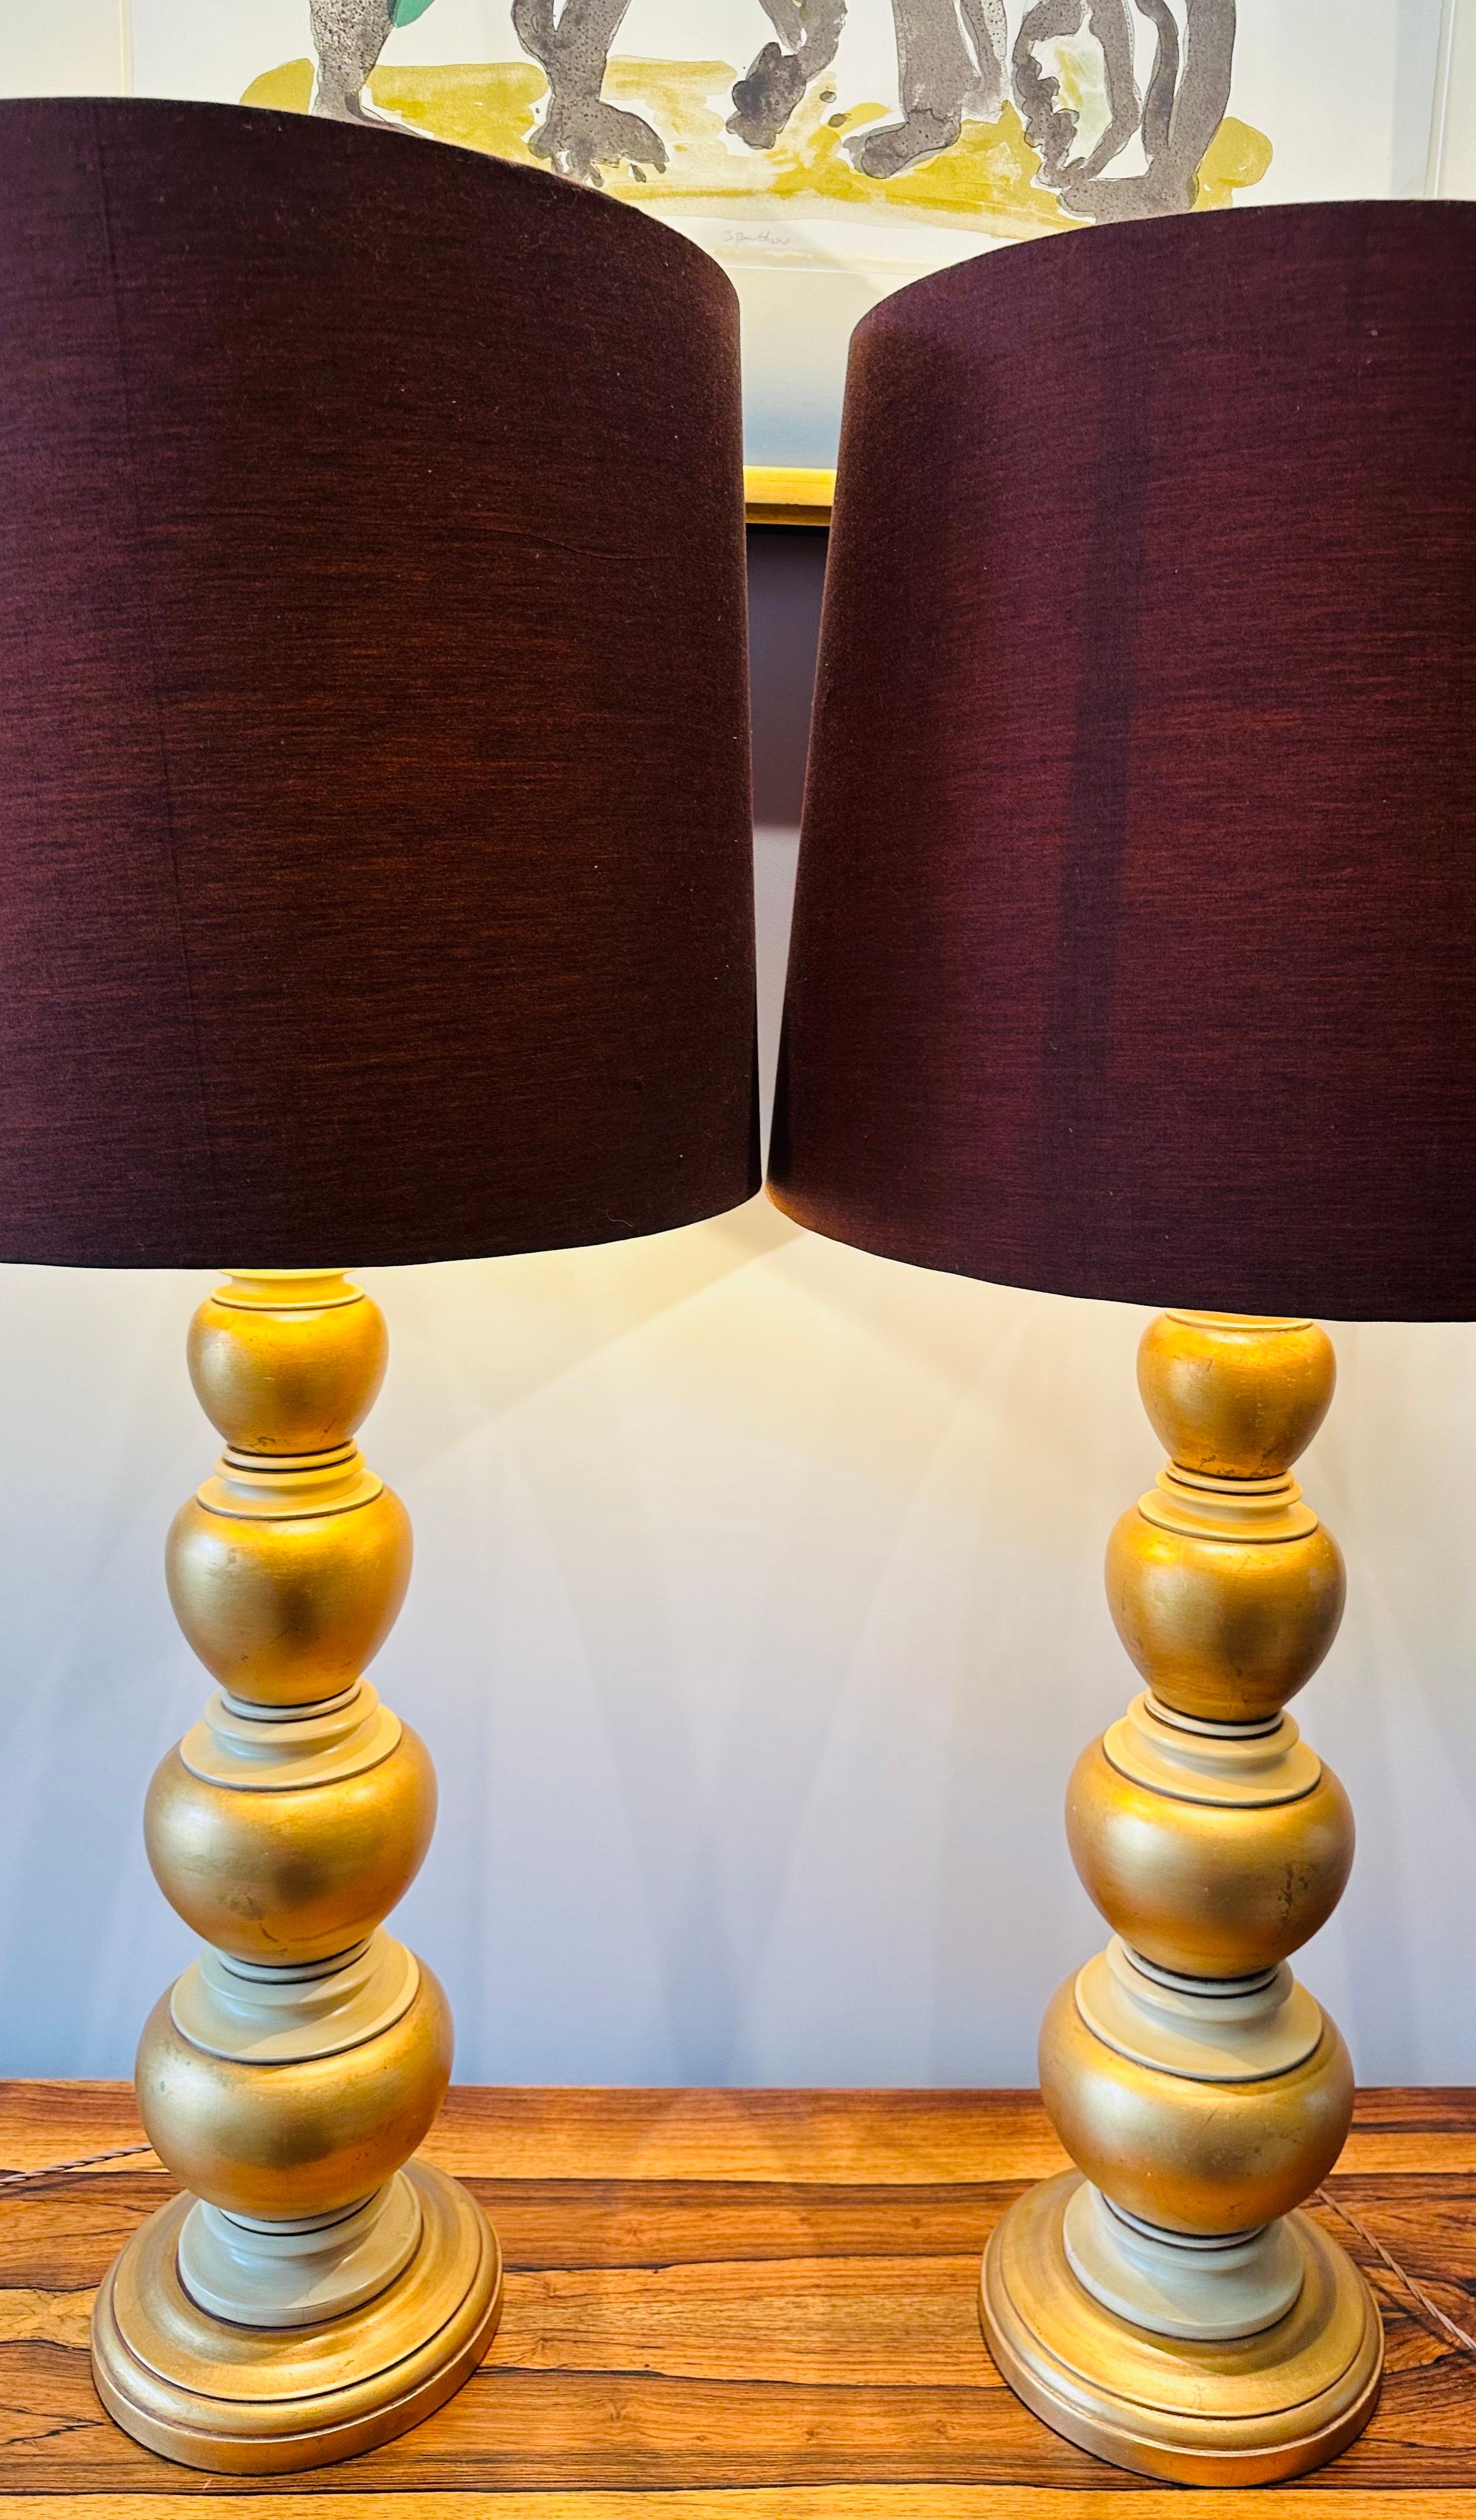 Zwei große amerikanische Frederick Cooper Tischlampen aus den 1950er Jahren mit Blattgold und cremefarbener Bemalung, die oft verwechselt werden und im Stil von James Mont gehalten sind. Die Lampen bestehen aus schwerem, gedrechseltem Holz, das so